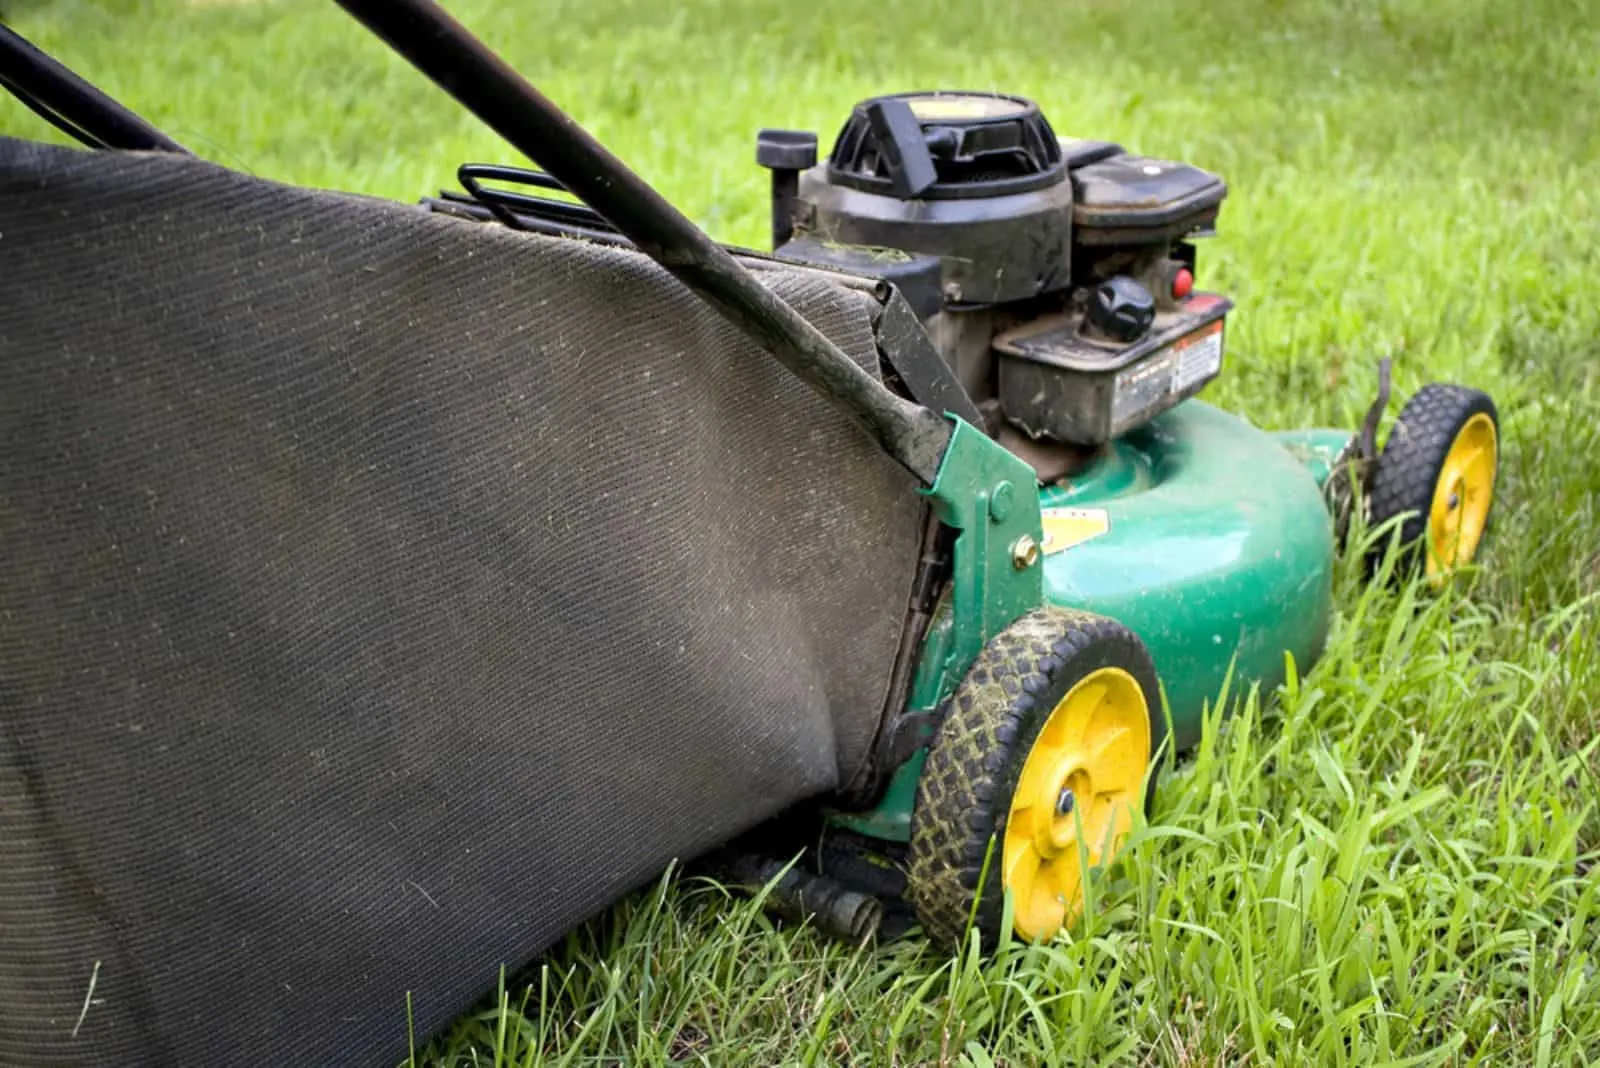 A modern lawn mower cutting through the grass.